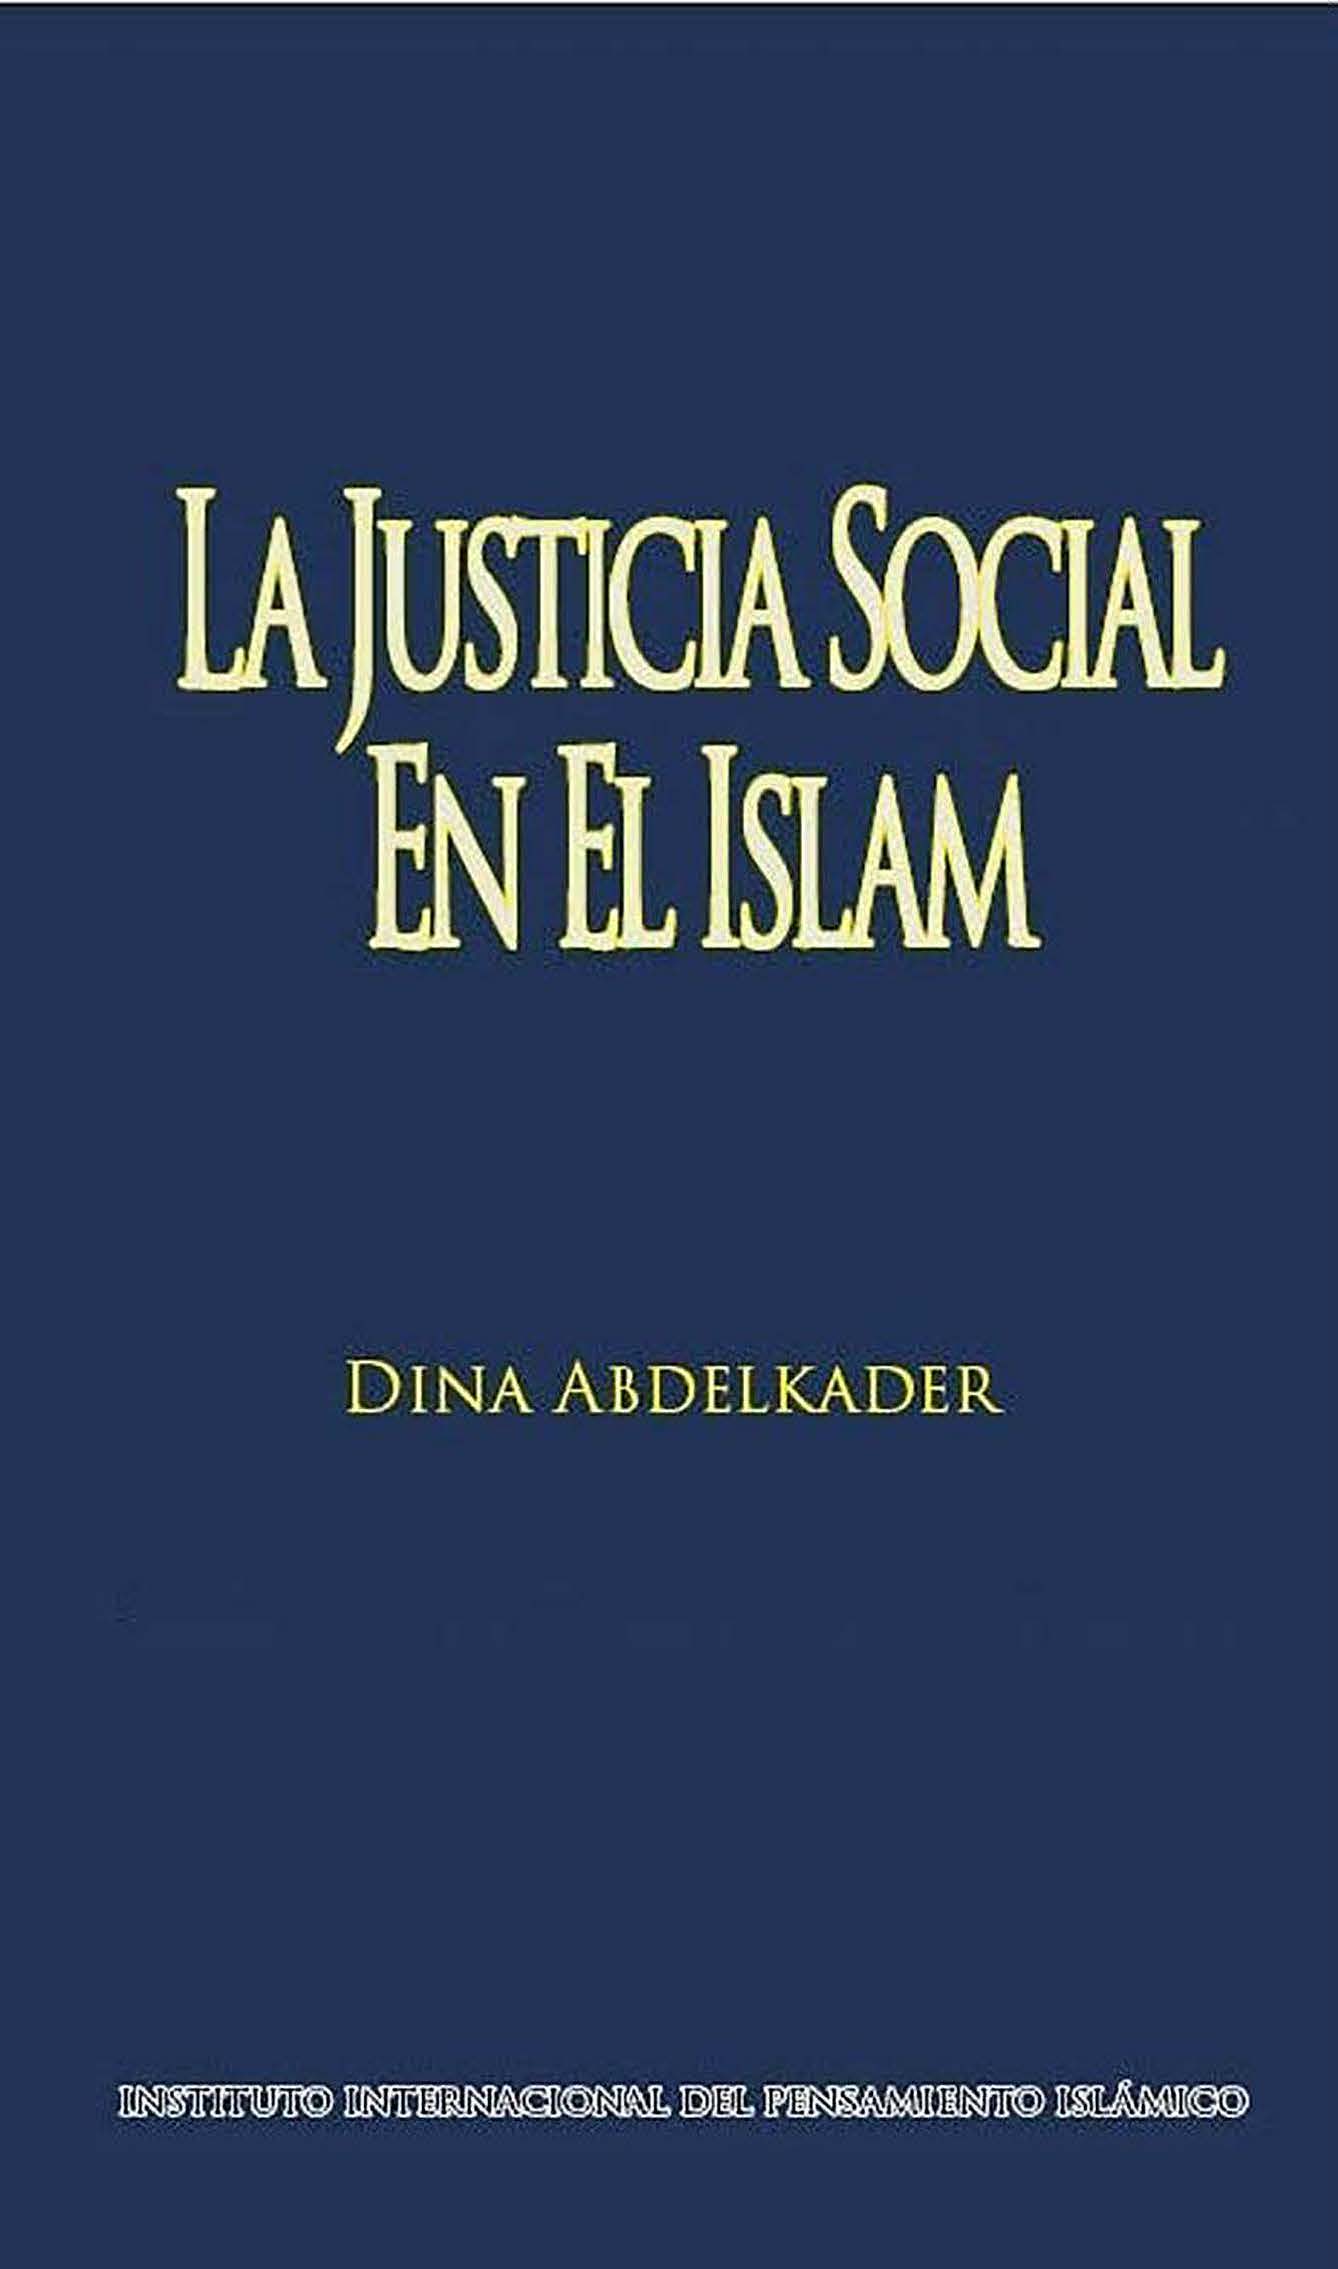 Spanish: La justicia Social en el Islam         (Social Justice in Islam)